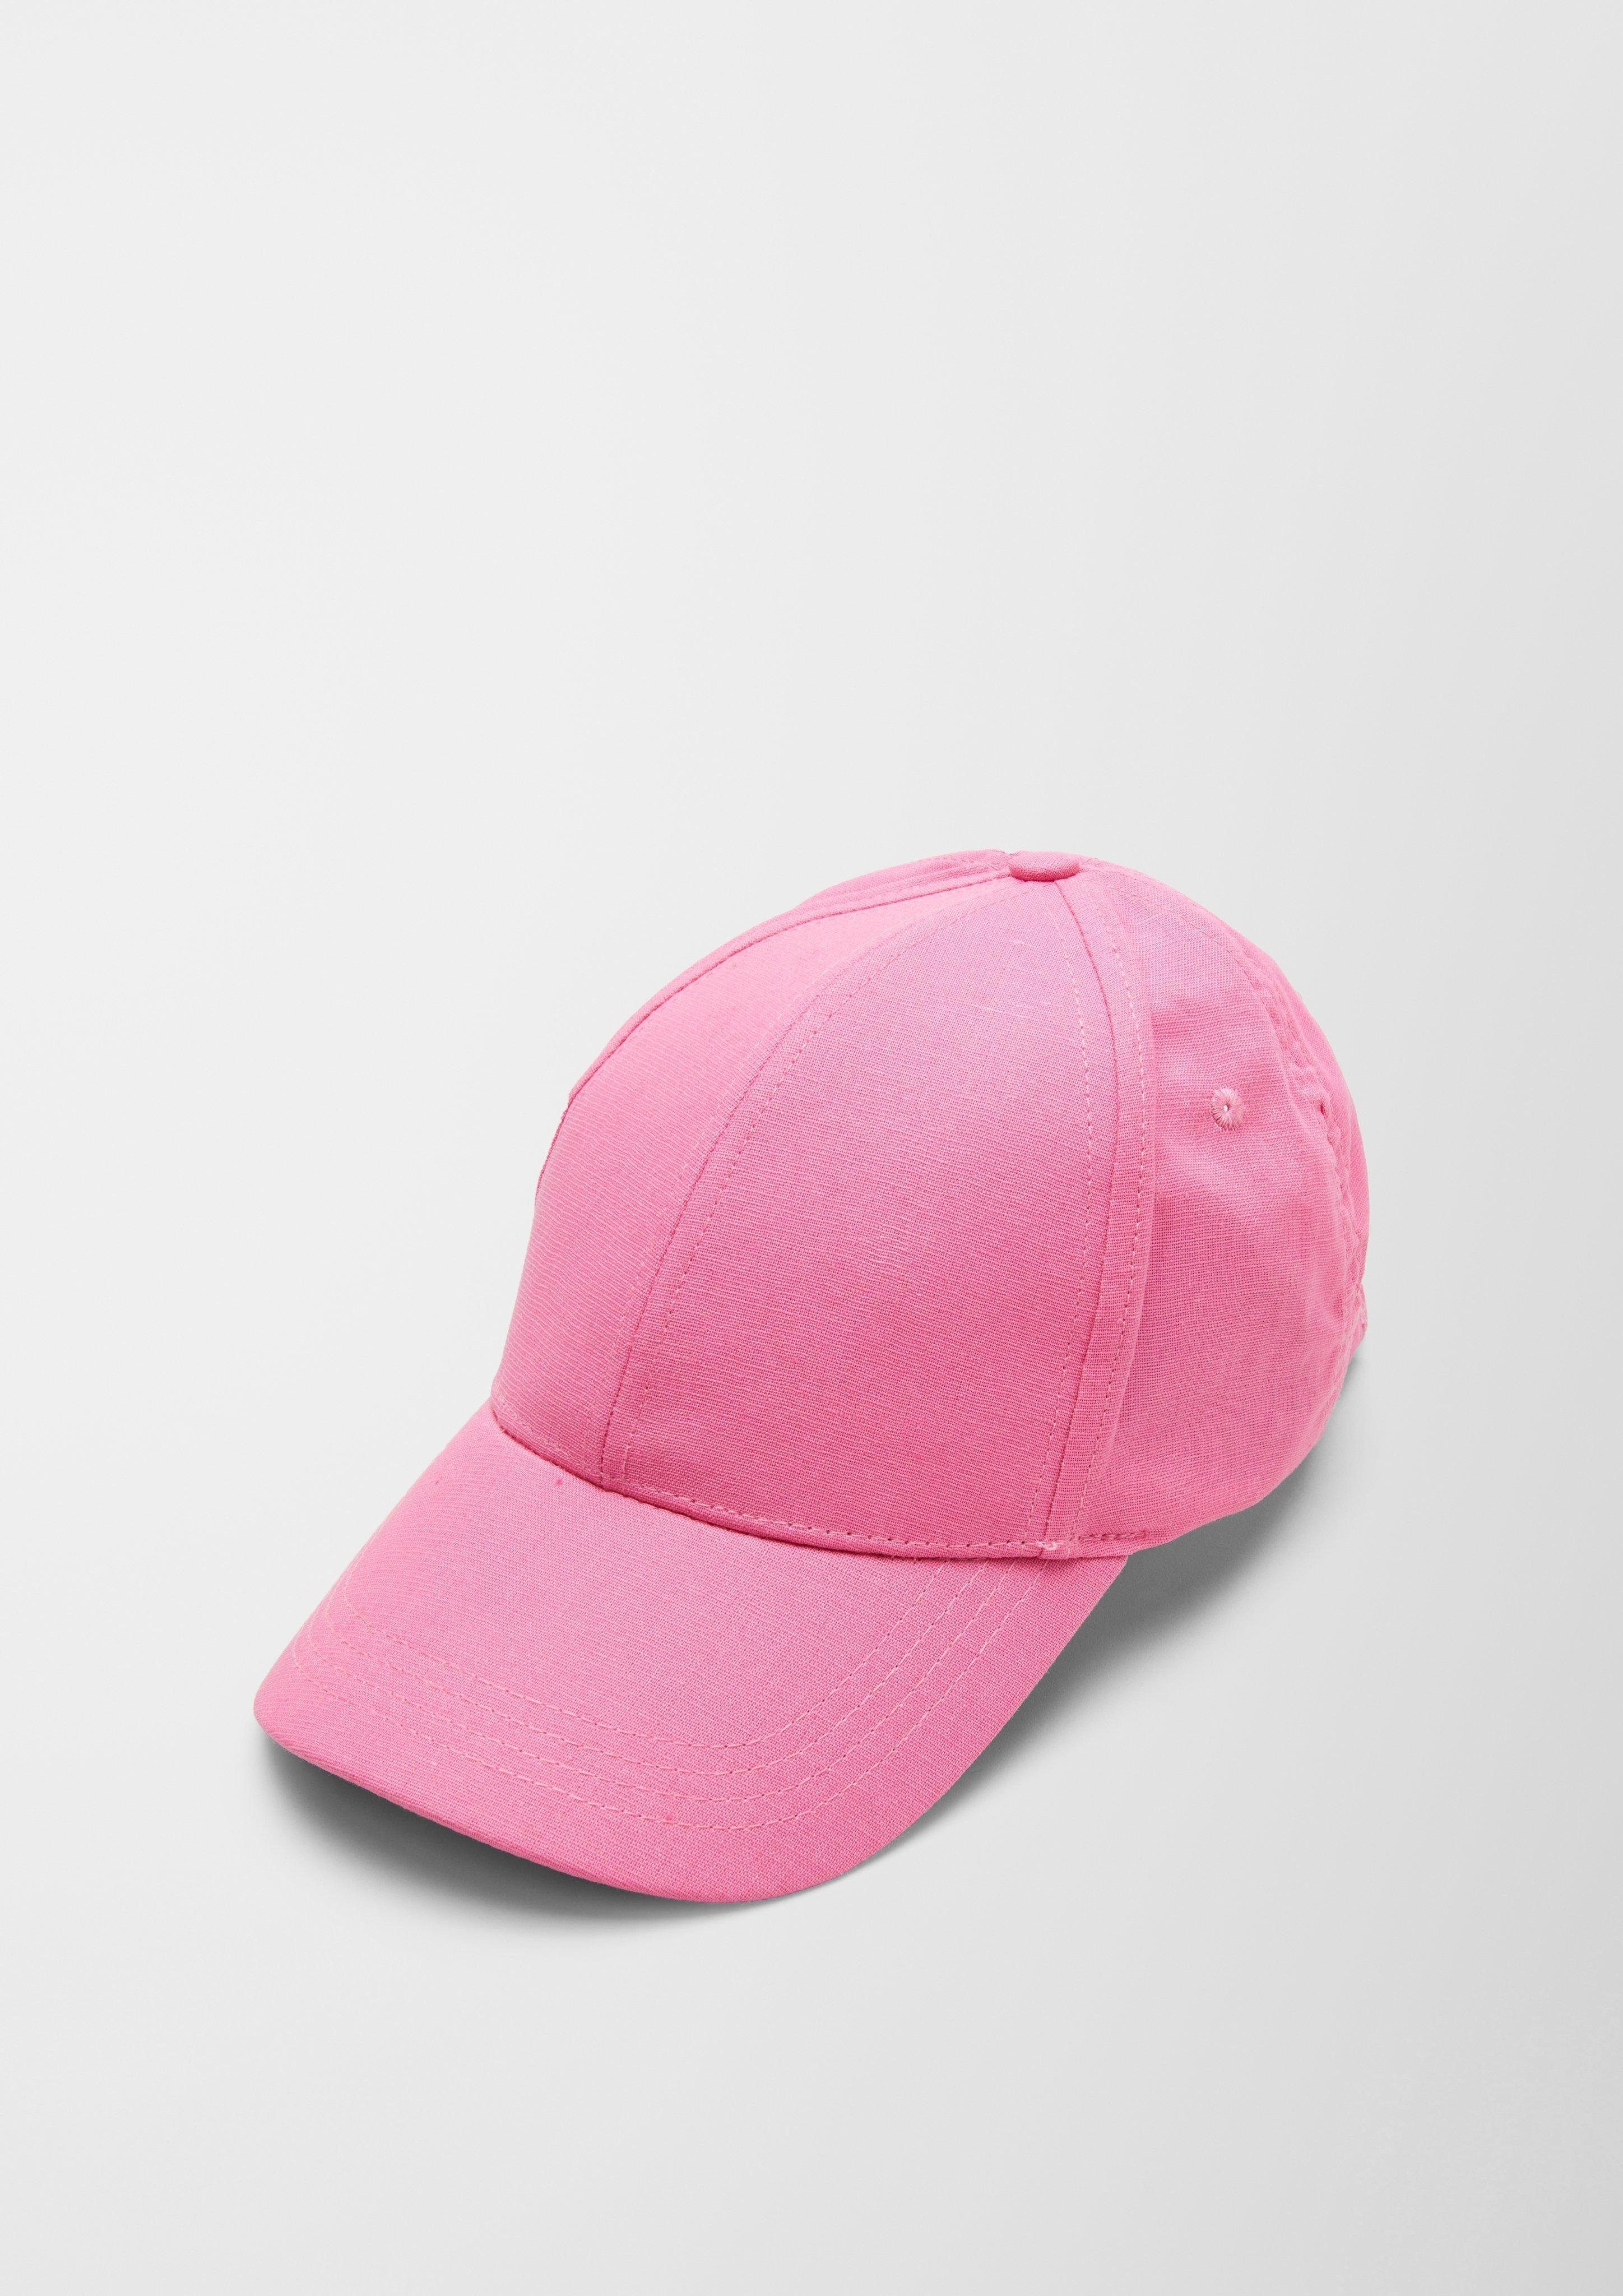 Leinenmix Schlapphut aus Kappe pink s.Oliver